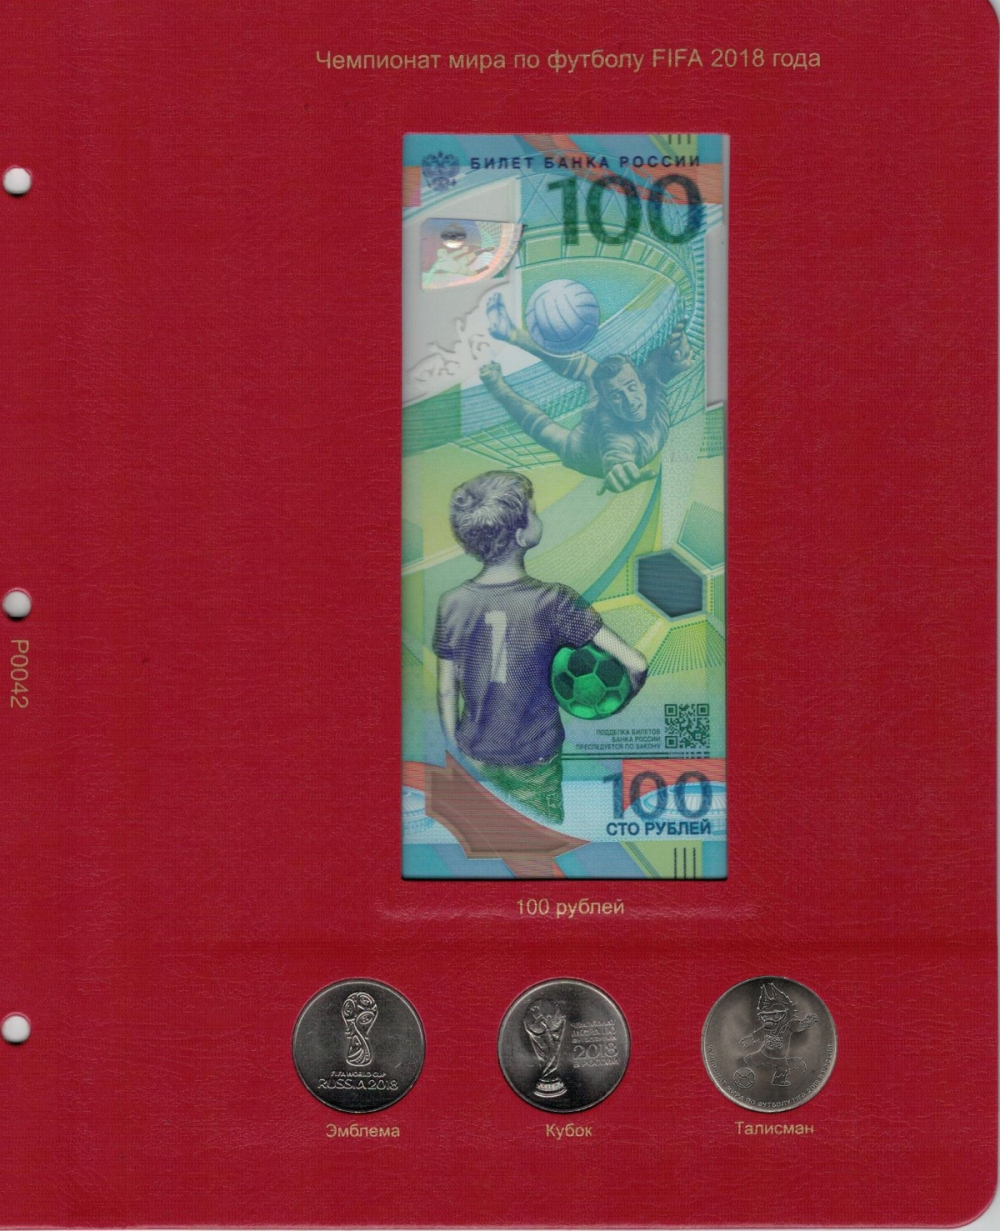 Лист для памятной банкноты "Чемпионат мира по футболу 2018 года" и монет